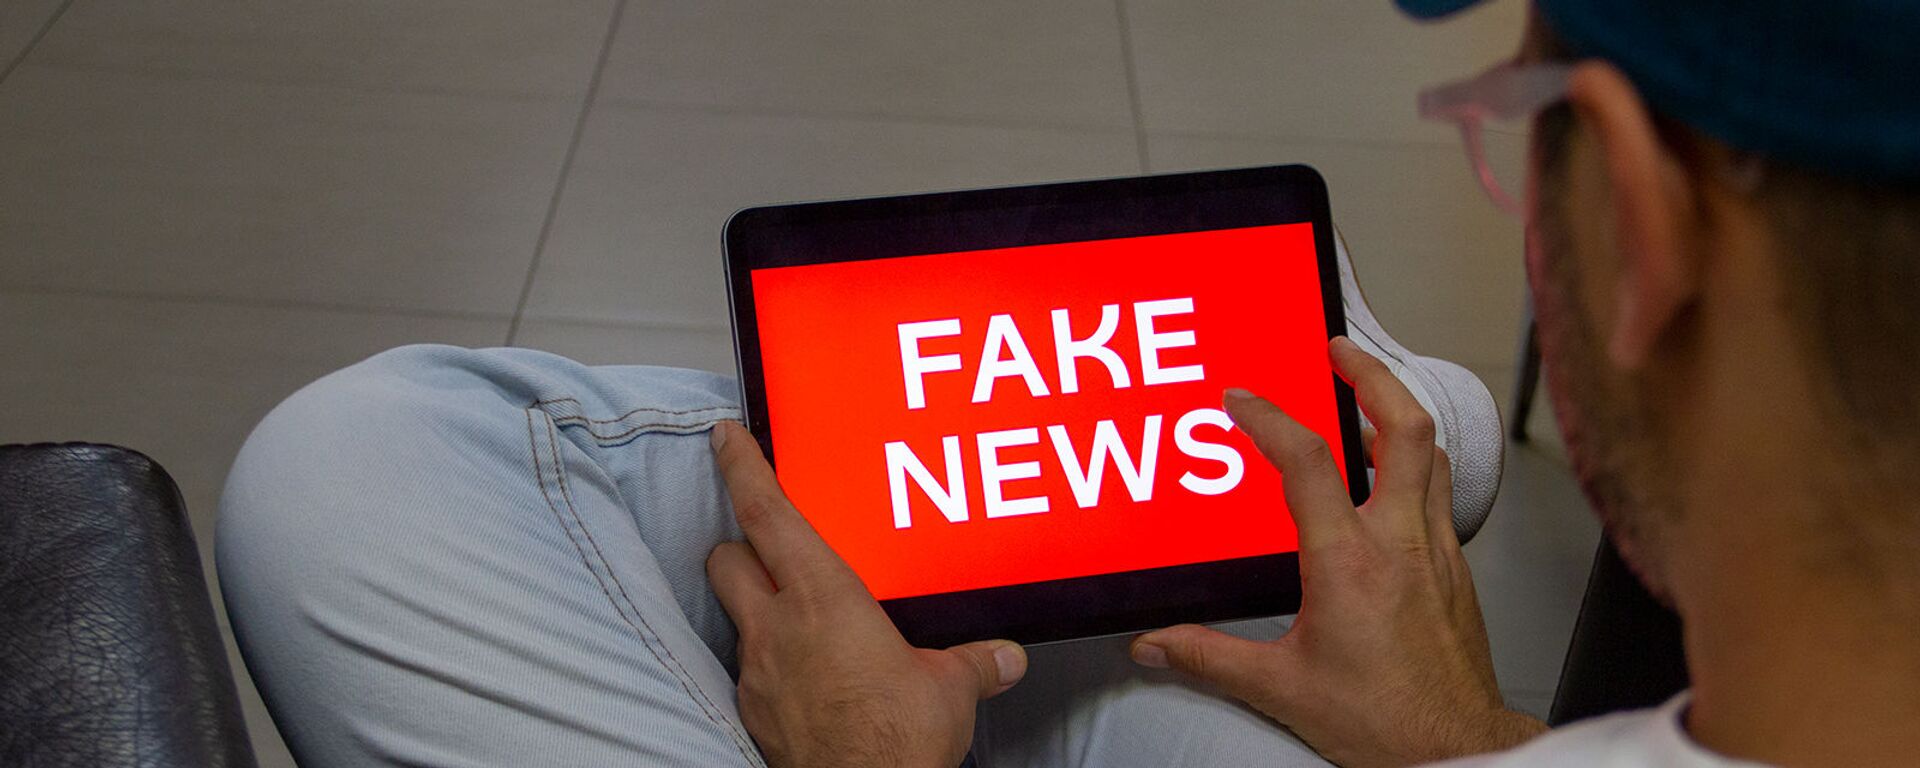 Пользователь читает fake news (постановочная фотография) - Sputnik Армения, 1920, 04.02.2021